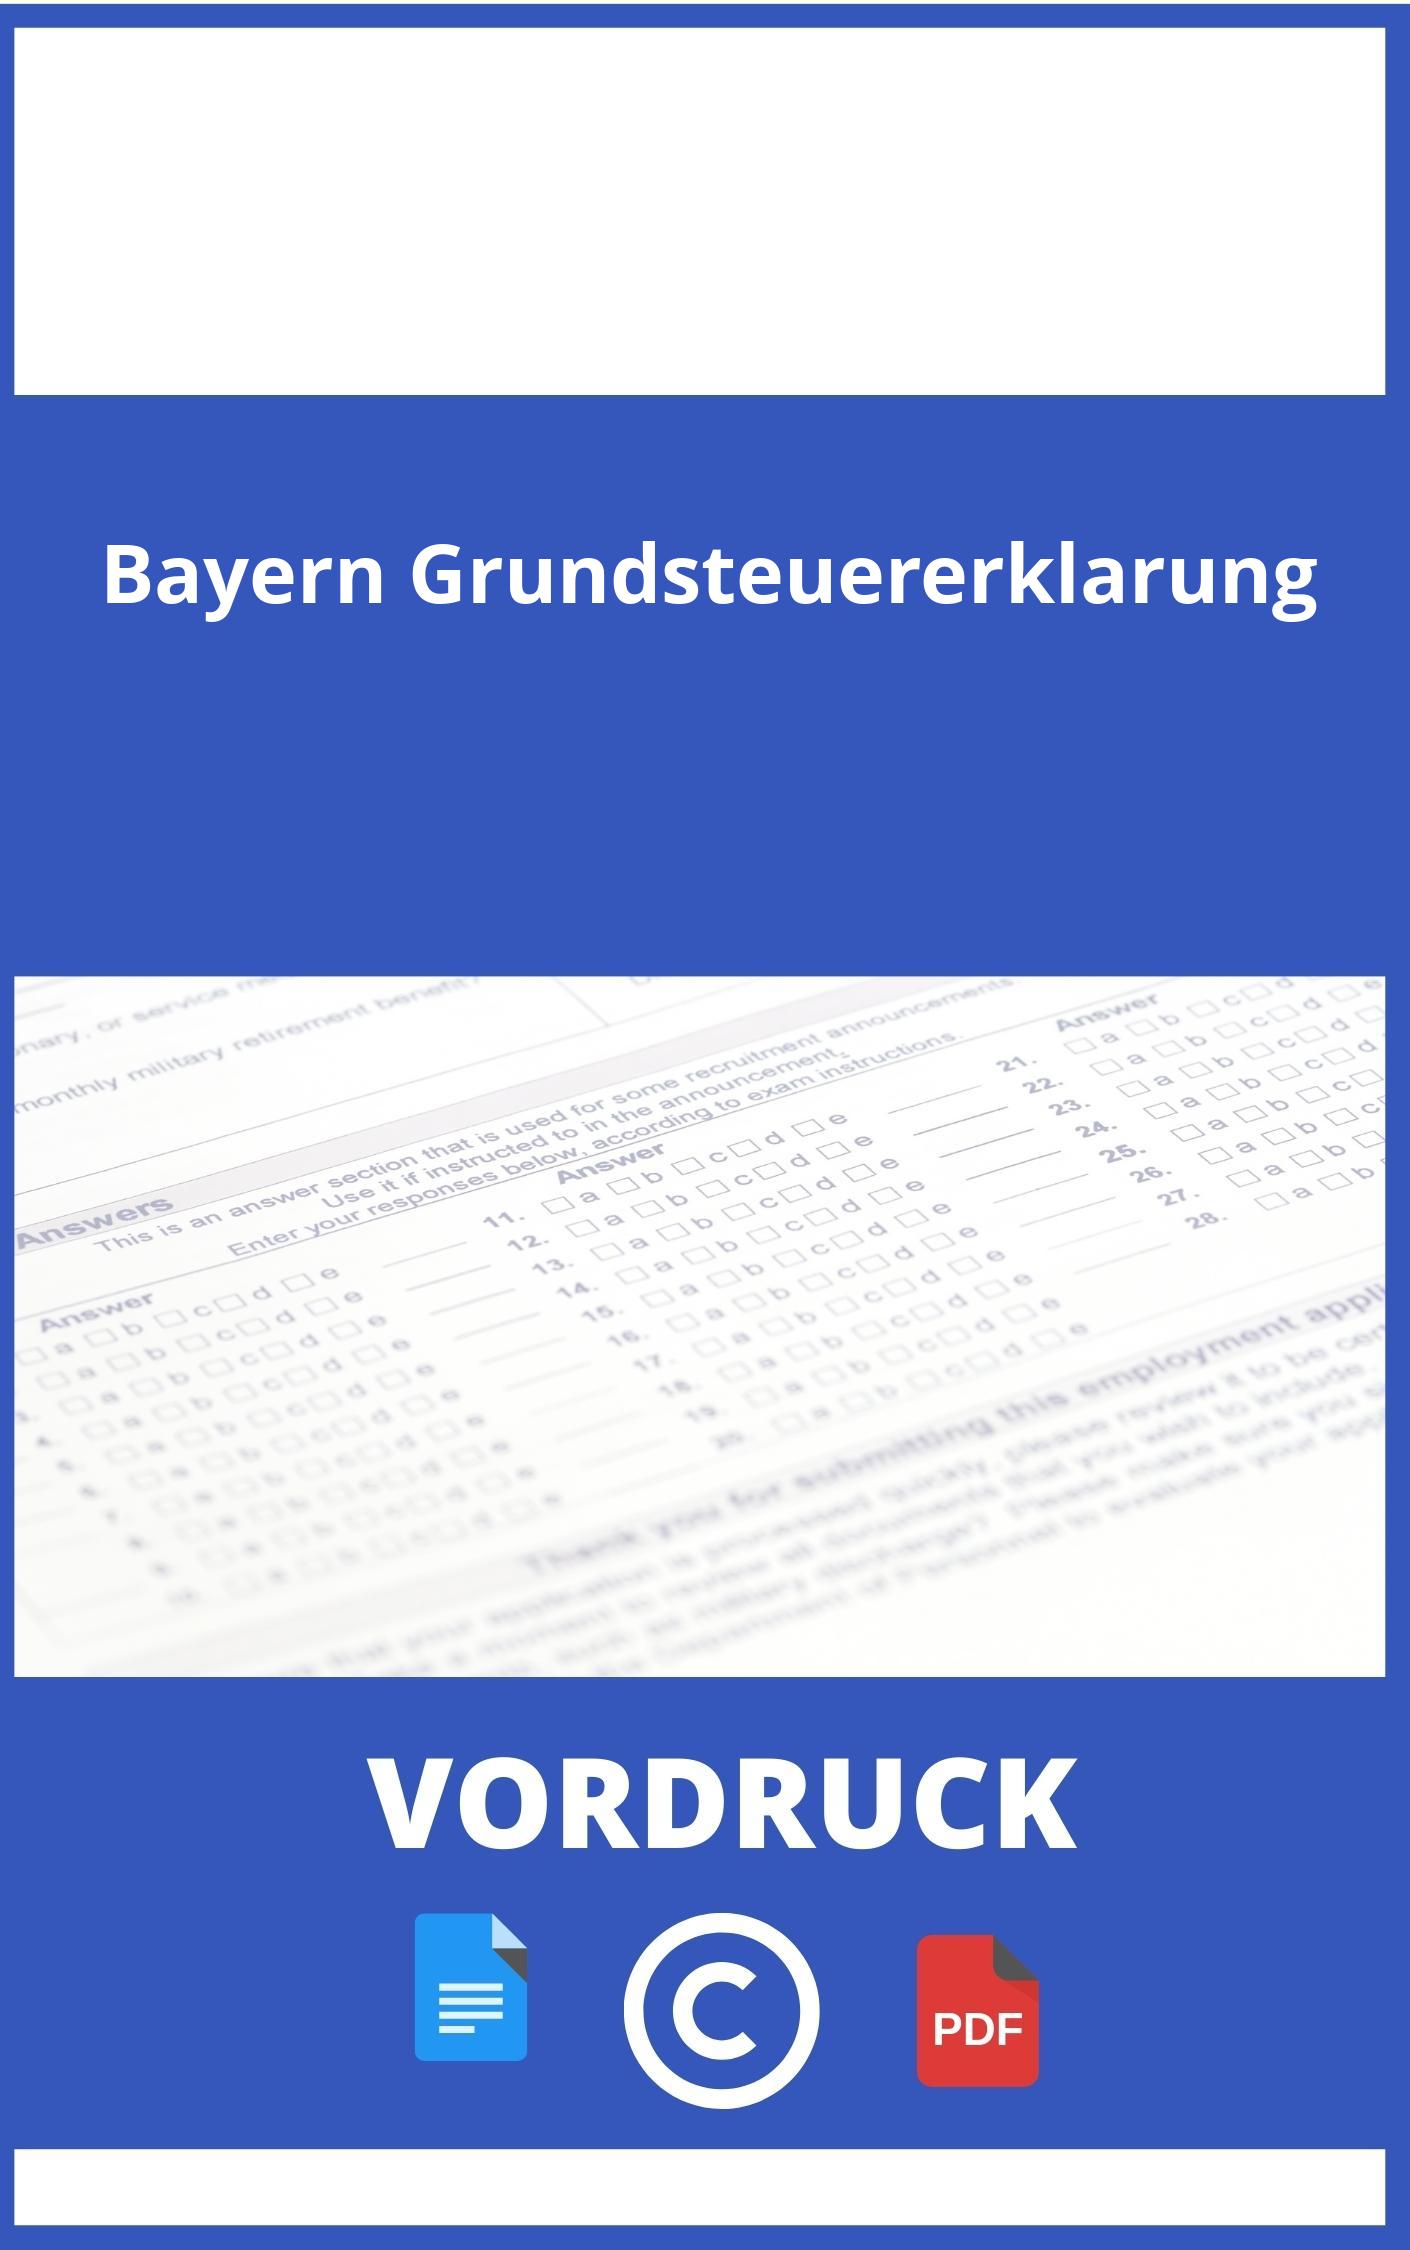 Bayern Grundsteuererklärung Vordruck